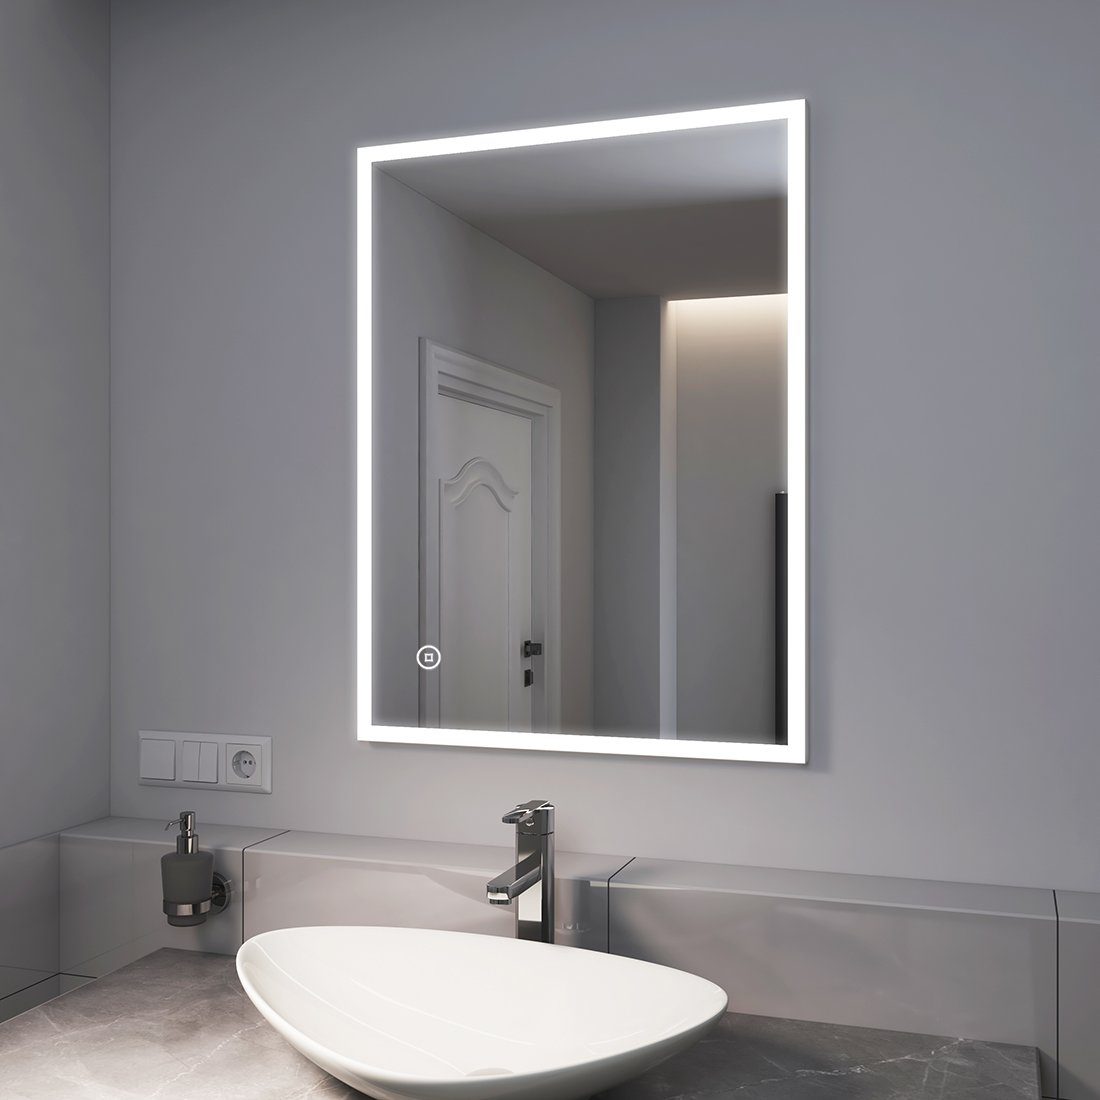 (Modell mit 80x60cm 6500K EMKE K) Beleuchtung, EMKE mit Badspiegel Badspiegel LED Kaltweiß Wandspiegel, Touch-schalter,